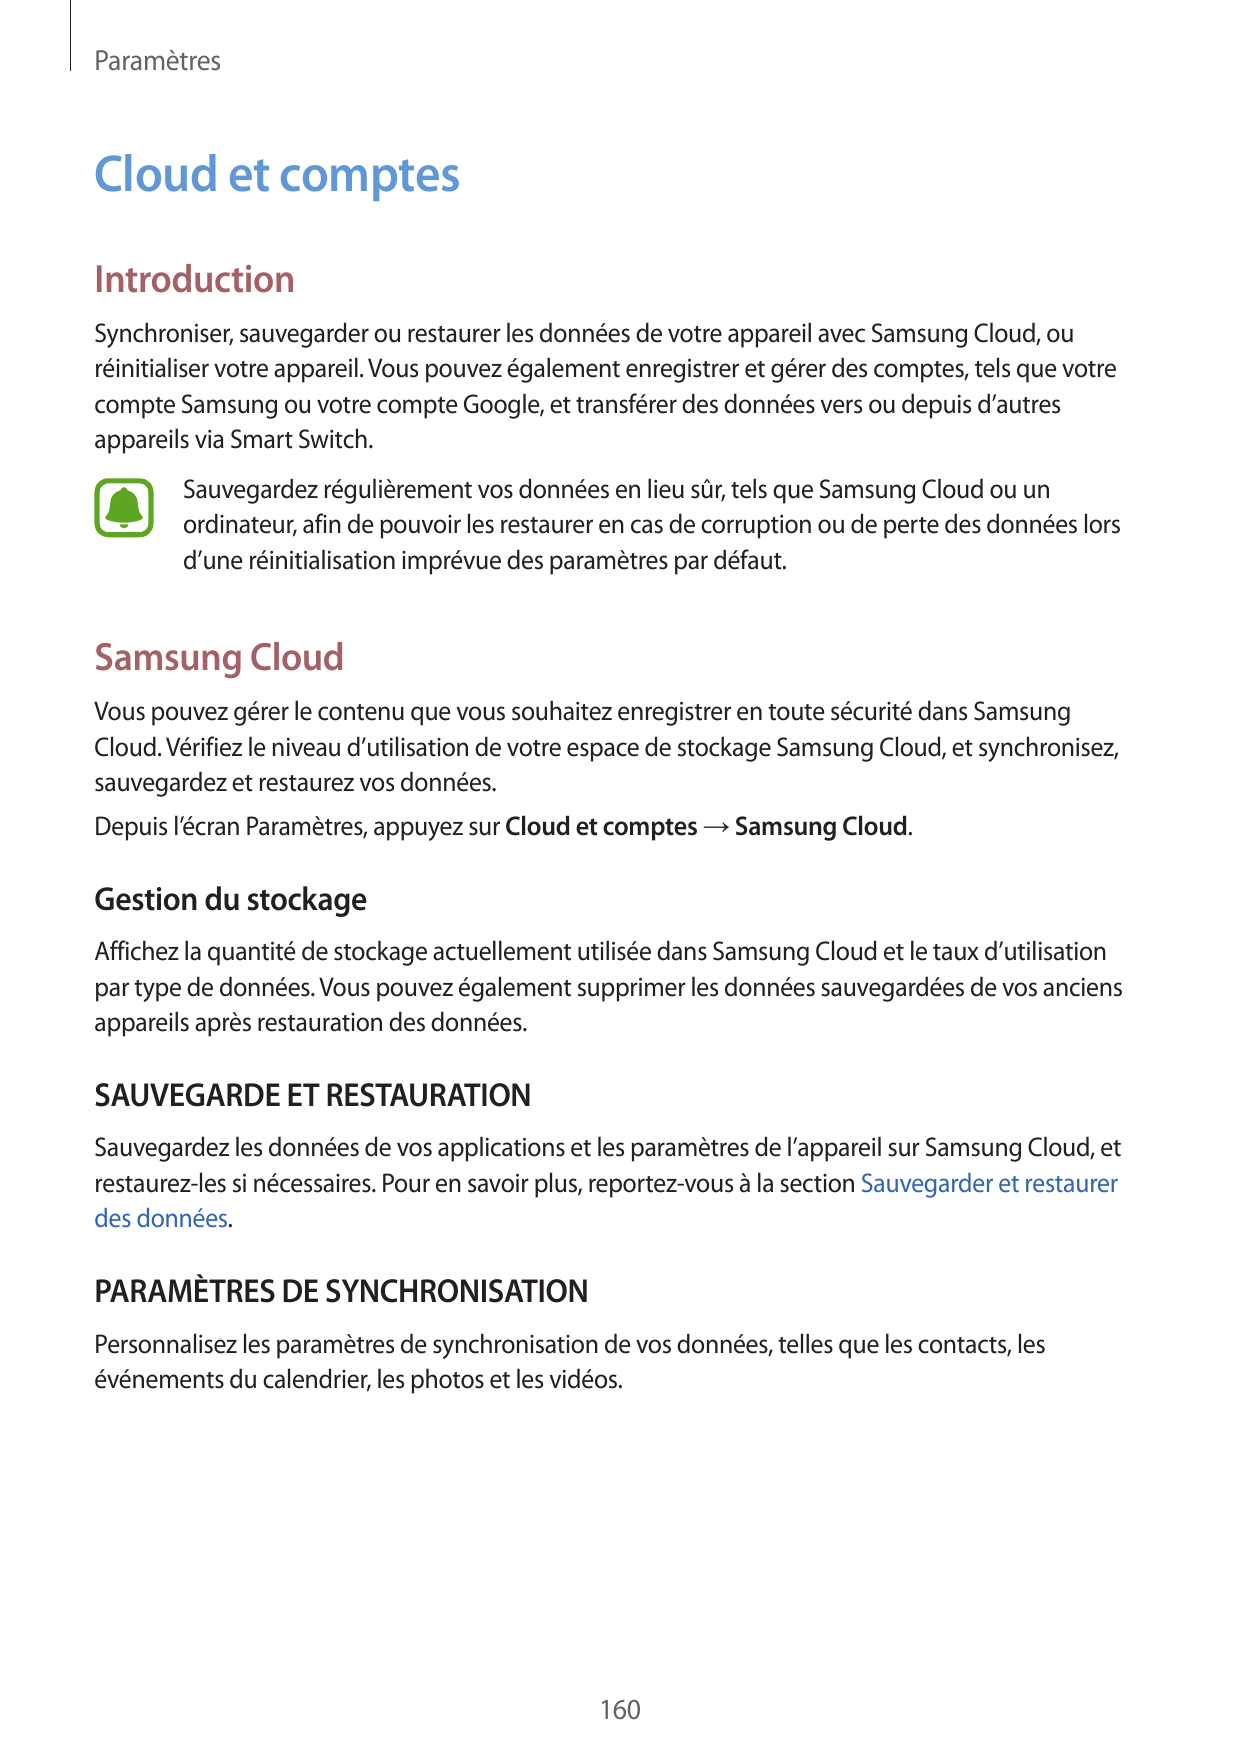 ParamètresCloud et comptesIntroductionSynchroniser, sauvegarder ou restaurer les données de votre appareil avec Samsung Cloud, o